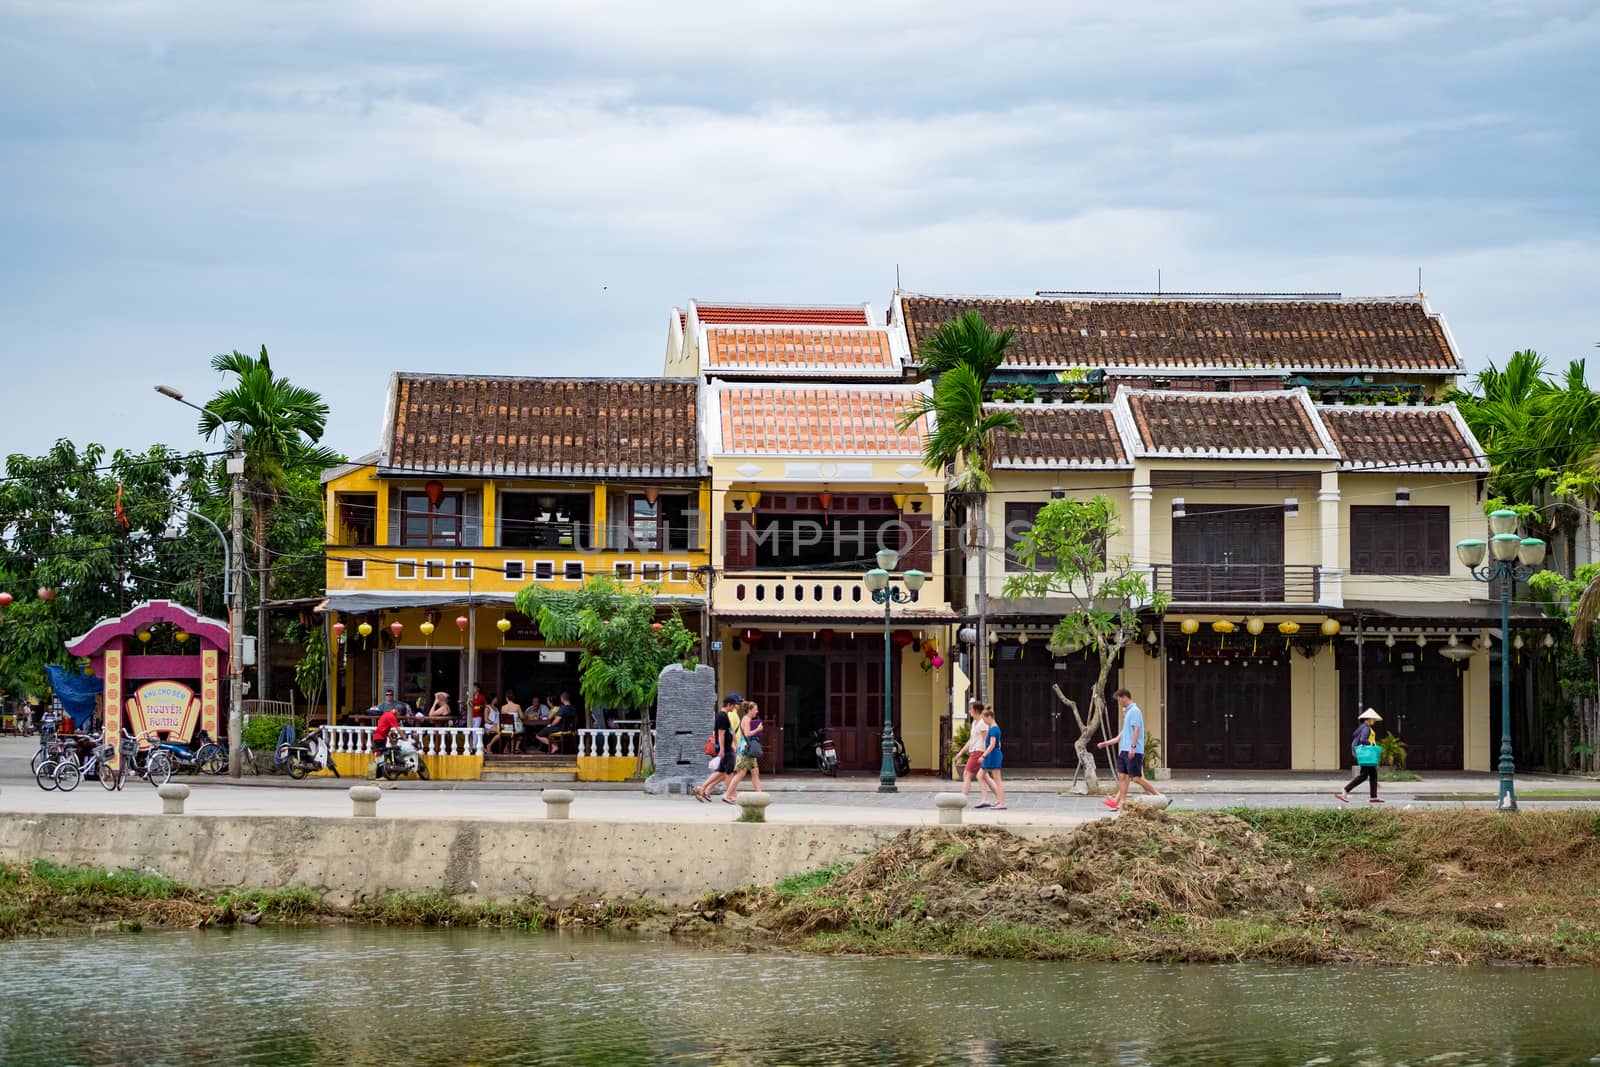 Hoi An, Vietnam by jangnhut